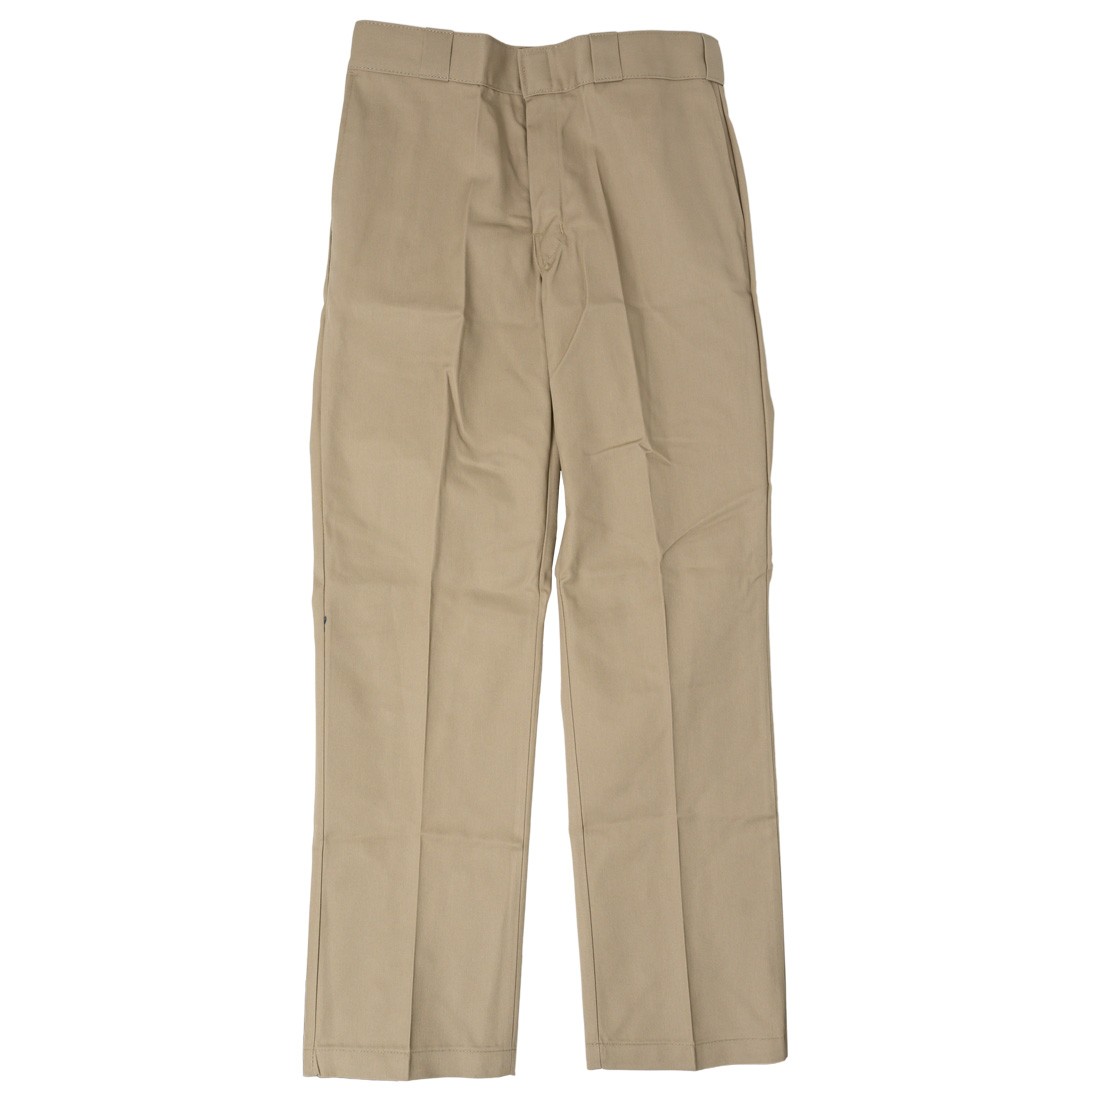 Dickies Men Original Fit 874 Work Pants (khaki)